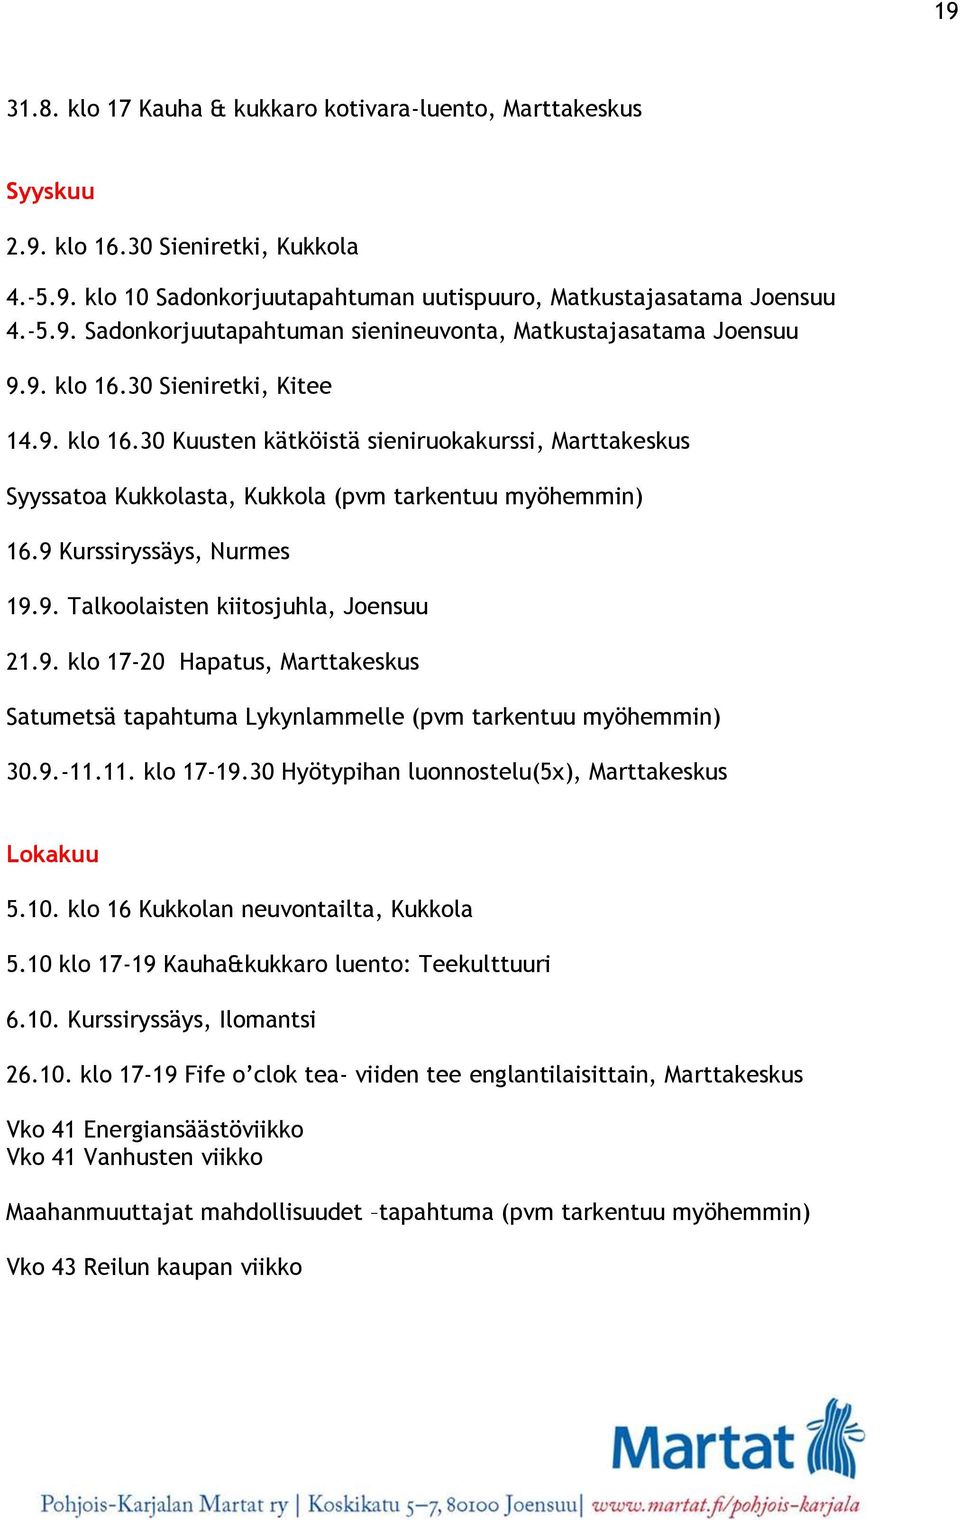 9. klo 17-20 Hapatus, Marttakeskus Satumetsä tapahtuma Lykynlammelle (pvm tarkentuu myöhemmin) 30.9.-11.11. klo 17-19.30 Hyötypihan luonnostelu(5x), Marttakeskus Lokakuu 5.10.